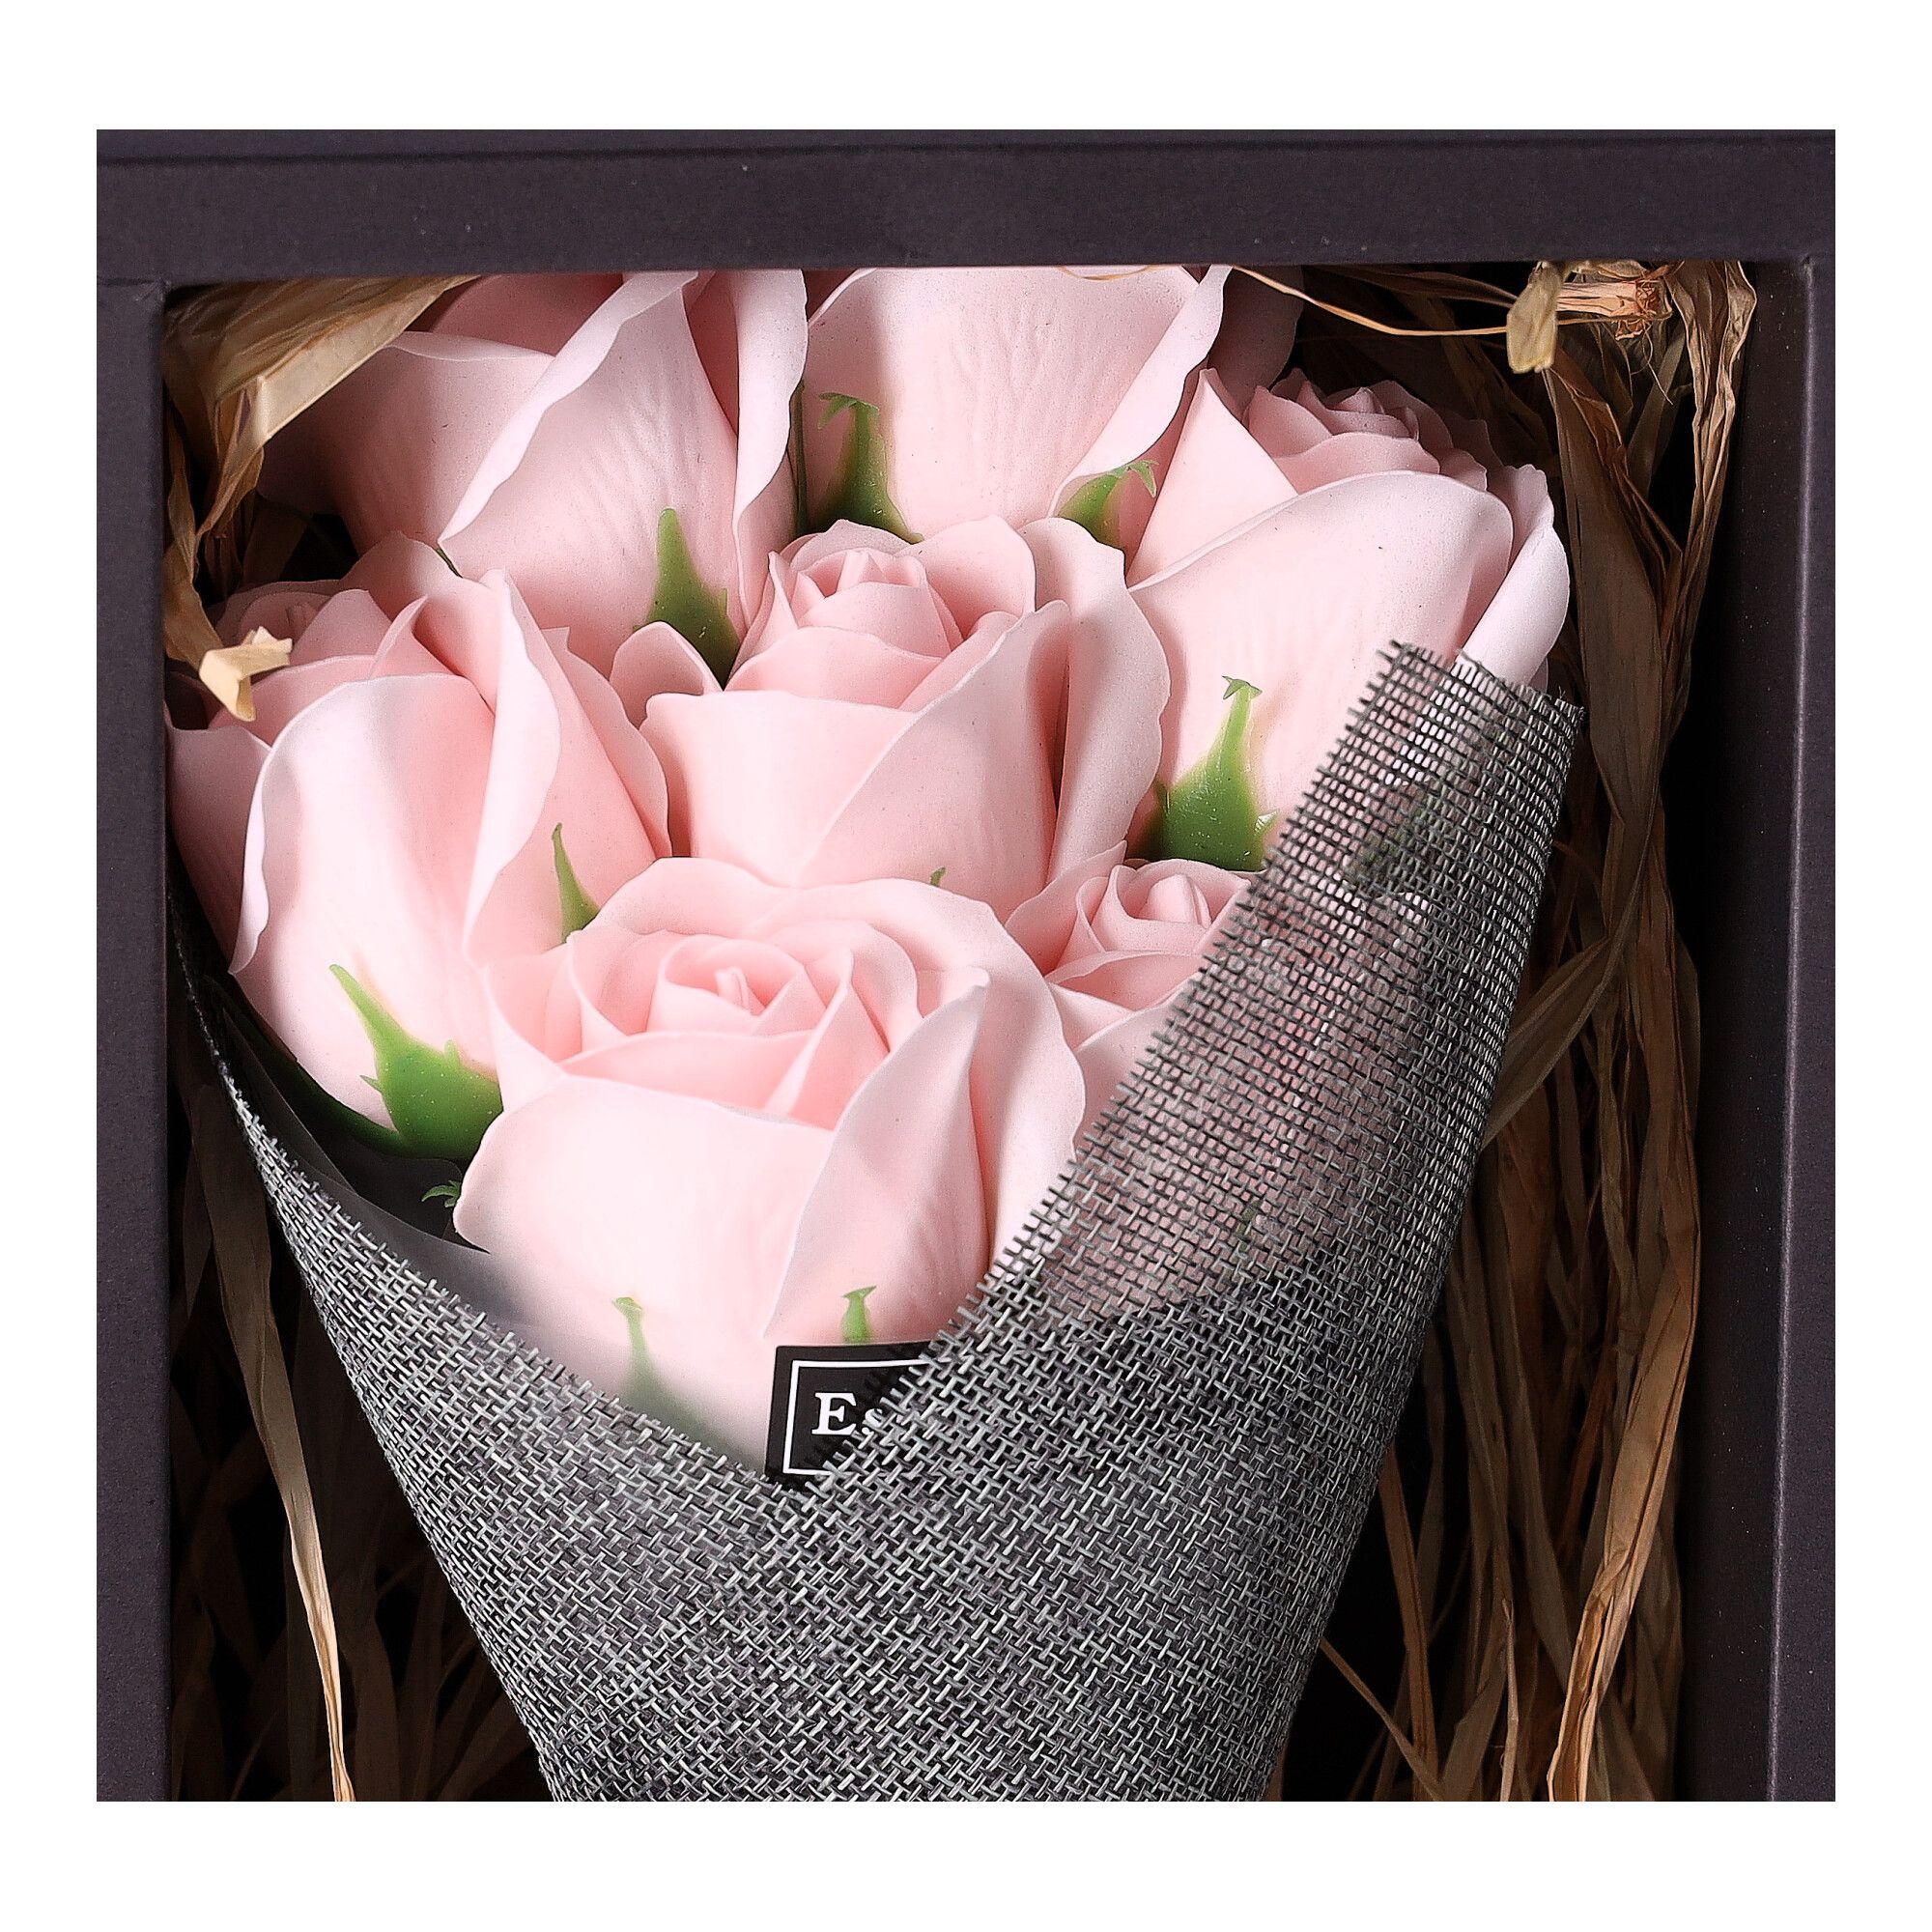 Box mydlanych róż - jasny róż